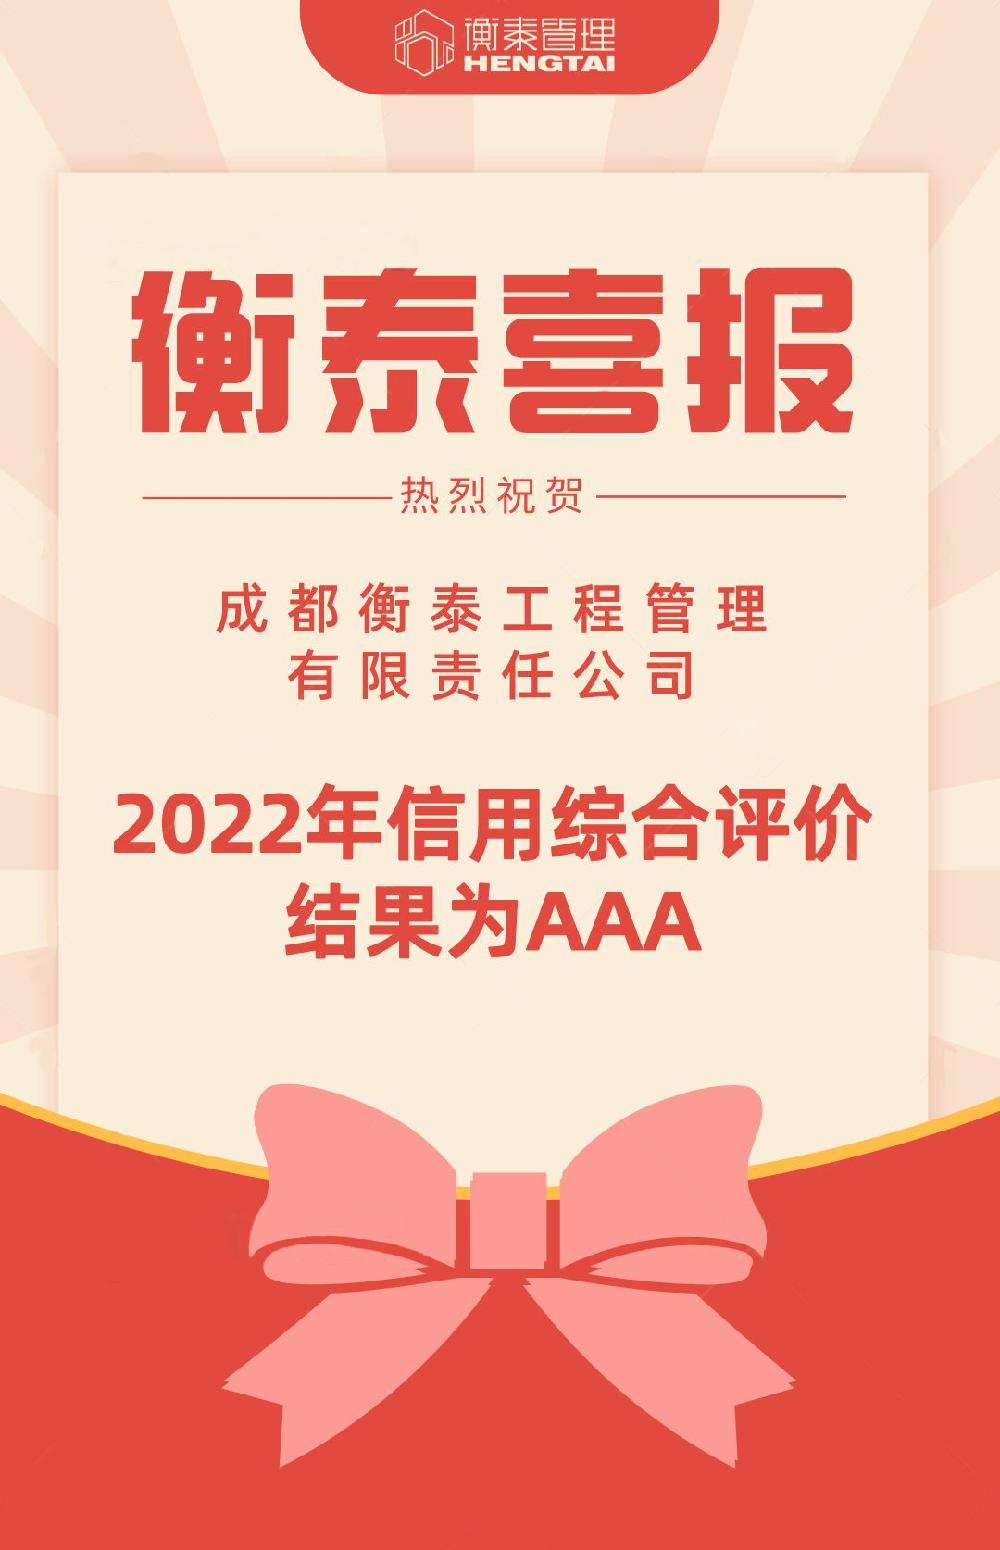 热烈祝贺|衡泰管理获得“2022年四川省工程造价咨询企业信用综合评价AAA”荣誉称号